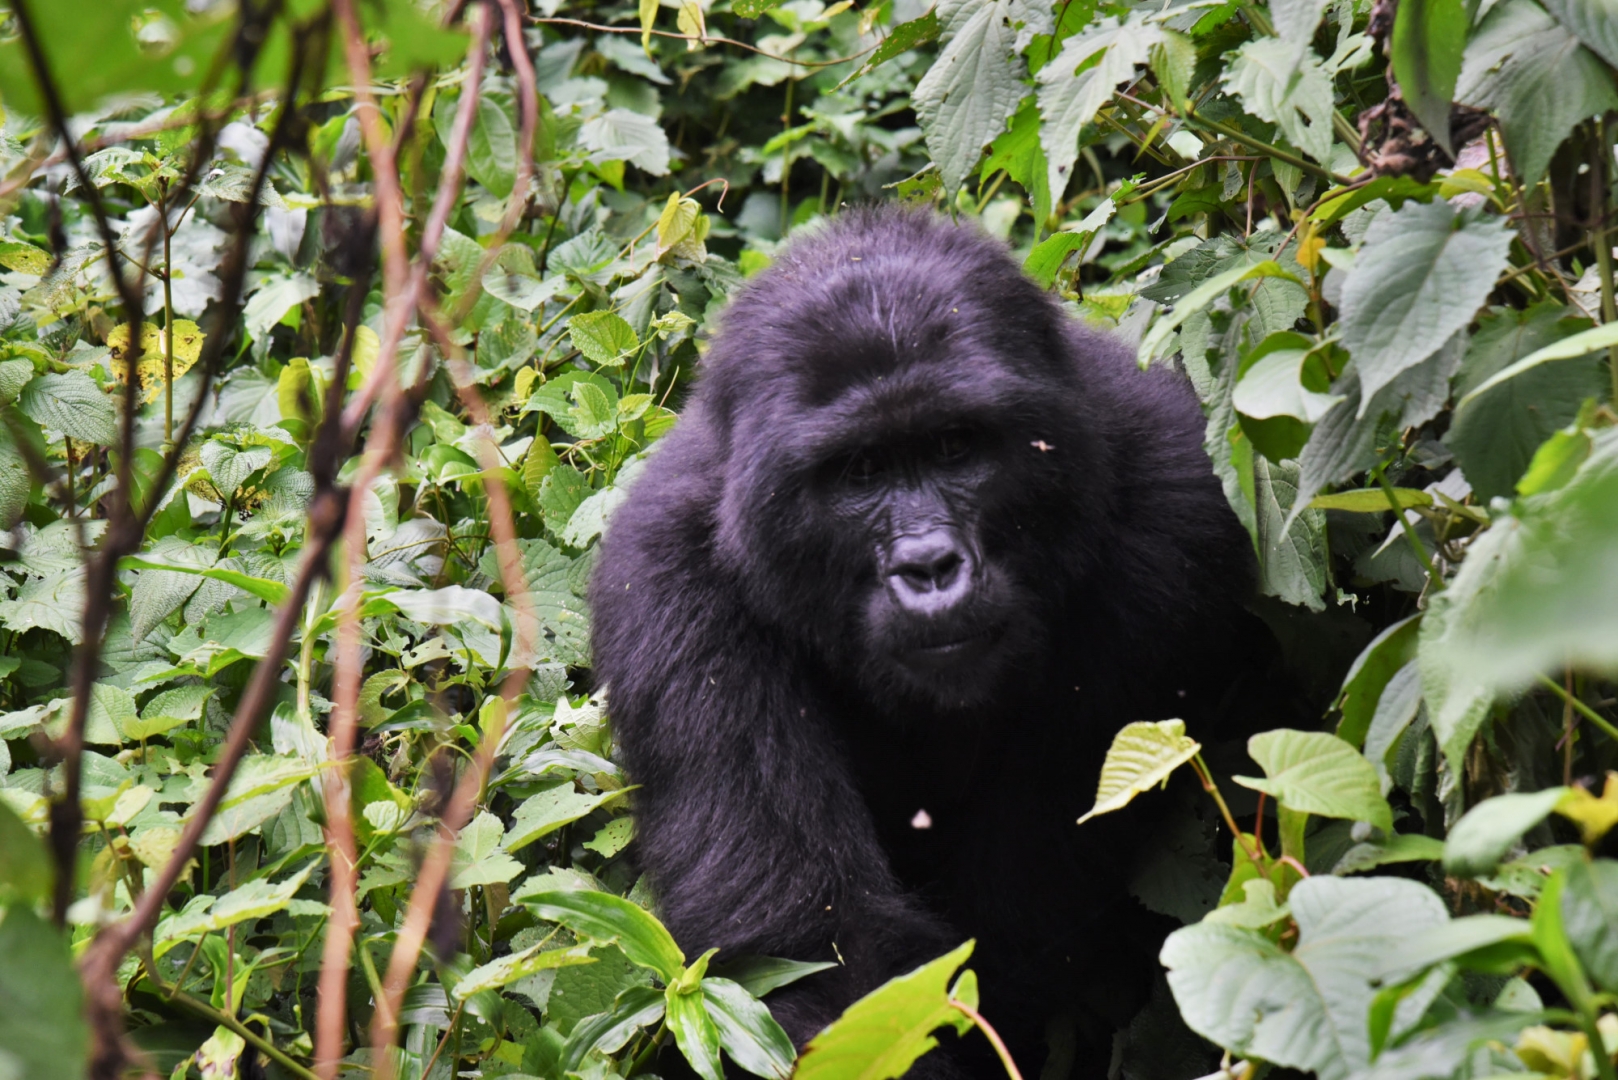 Горные гориллы живут только в двух областях африканского континента: в регионе Бвинди, и в пограничном треугольнике Уганды, Руанды, Демократической Республики Конго вокруг вулканов Вирунга